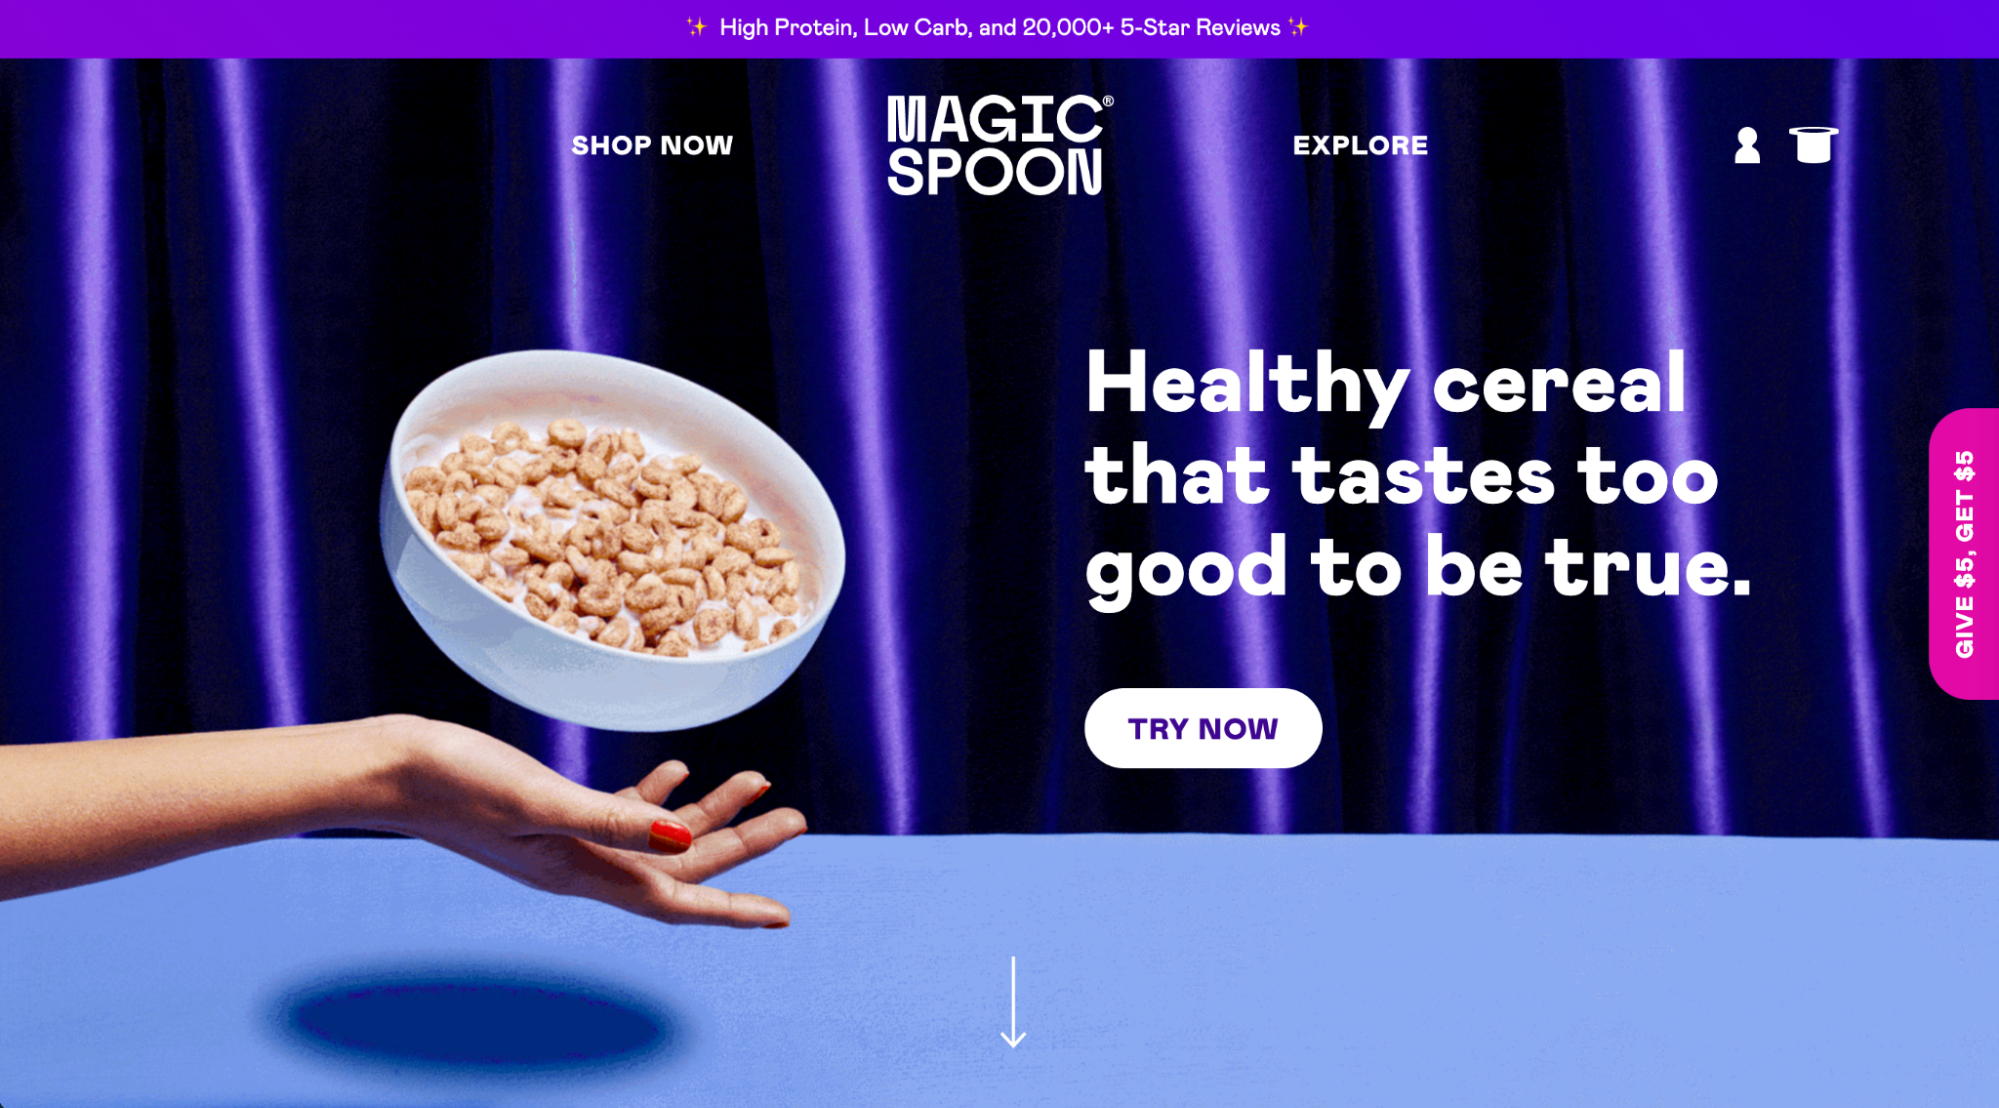 来自销售谷物的 DTC 企业 Magic Spoon 的网页设计示例